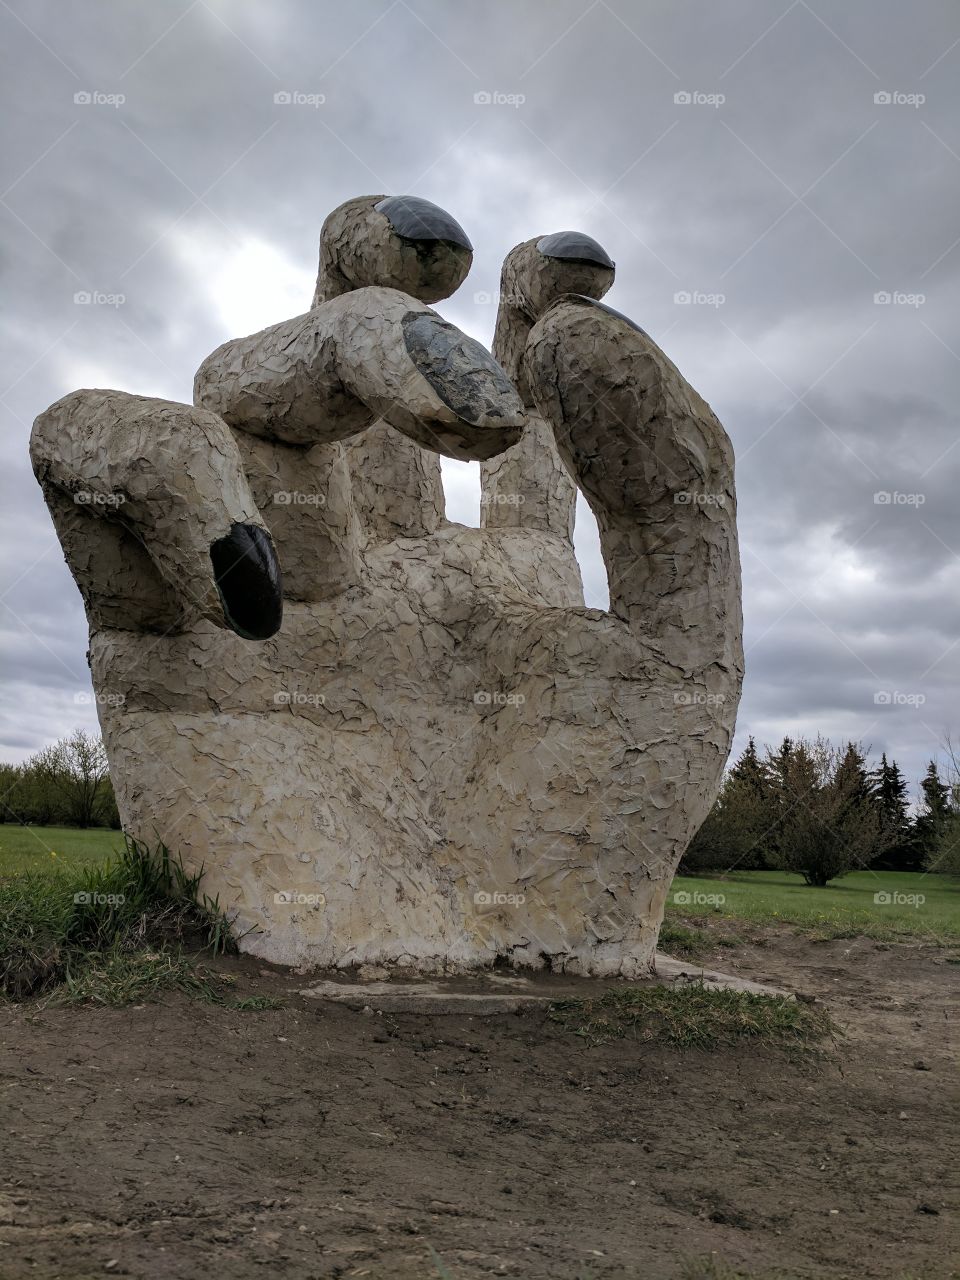 hand stone sculpture art